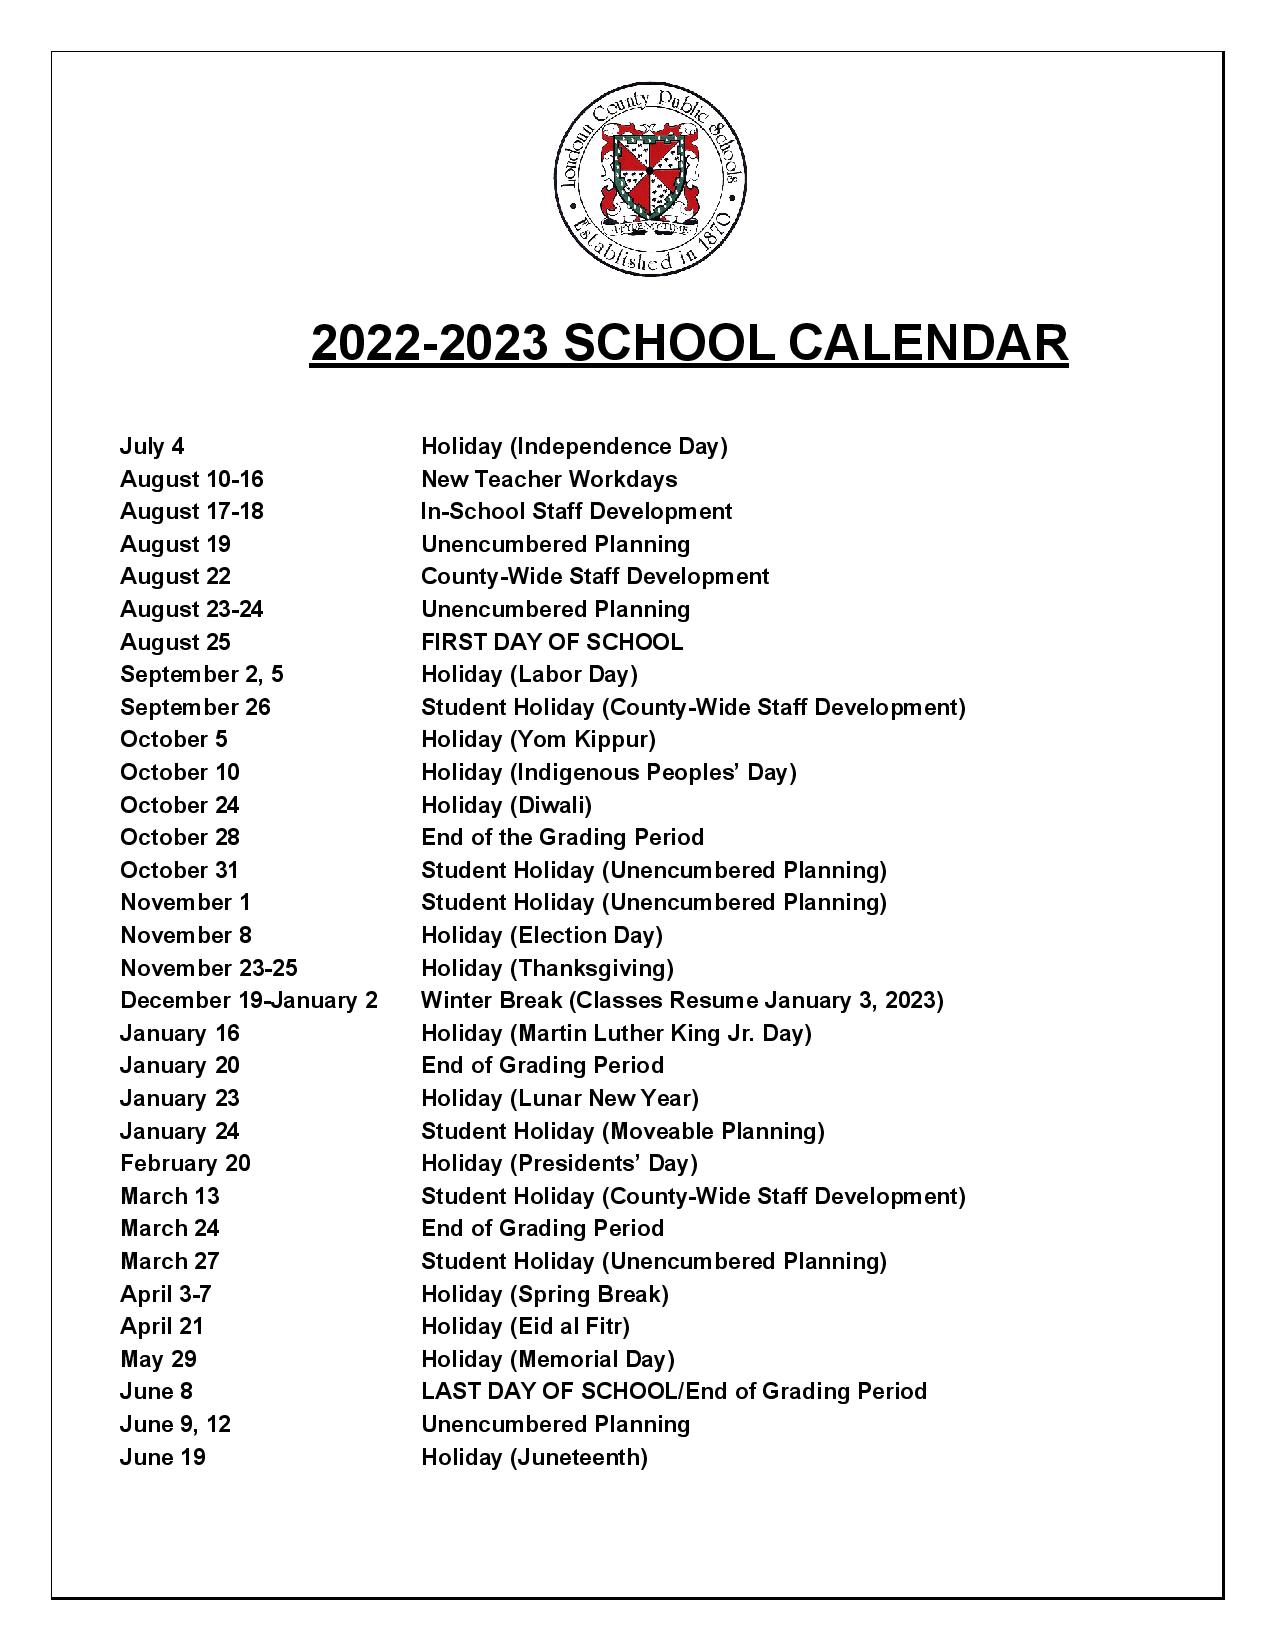 loudoun-county-public-schools-calendar-holidays-2022-2023